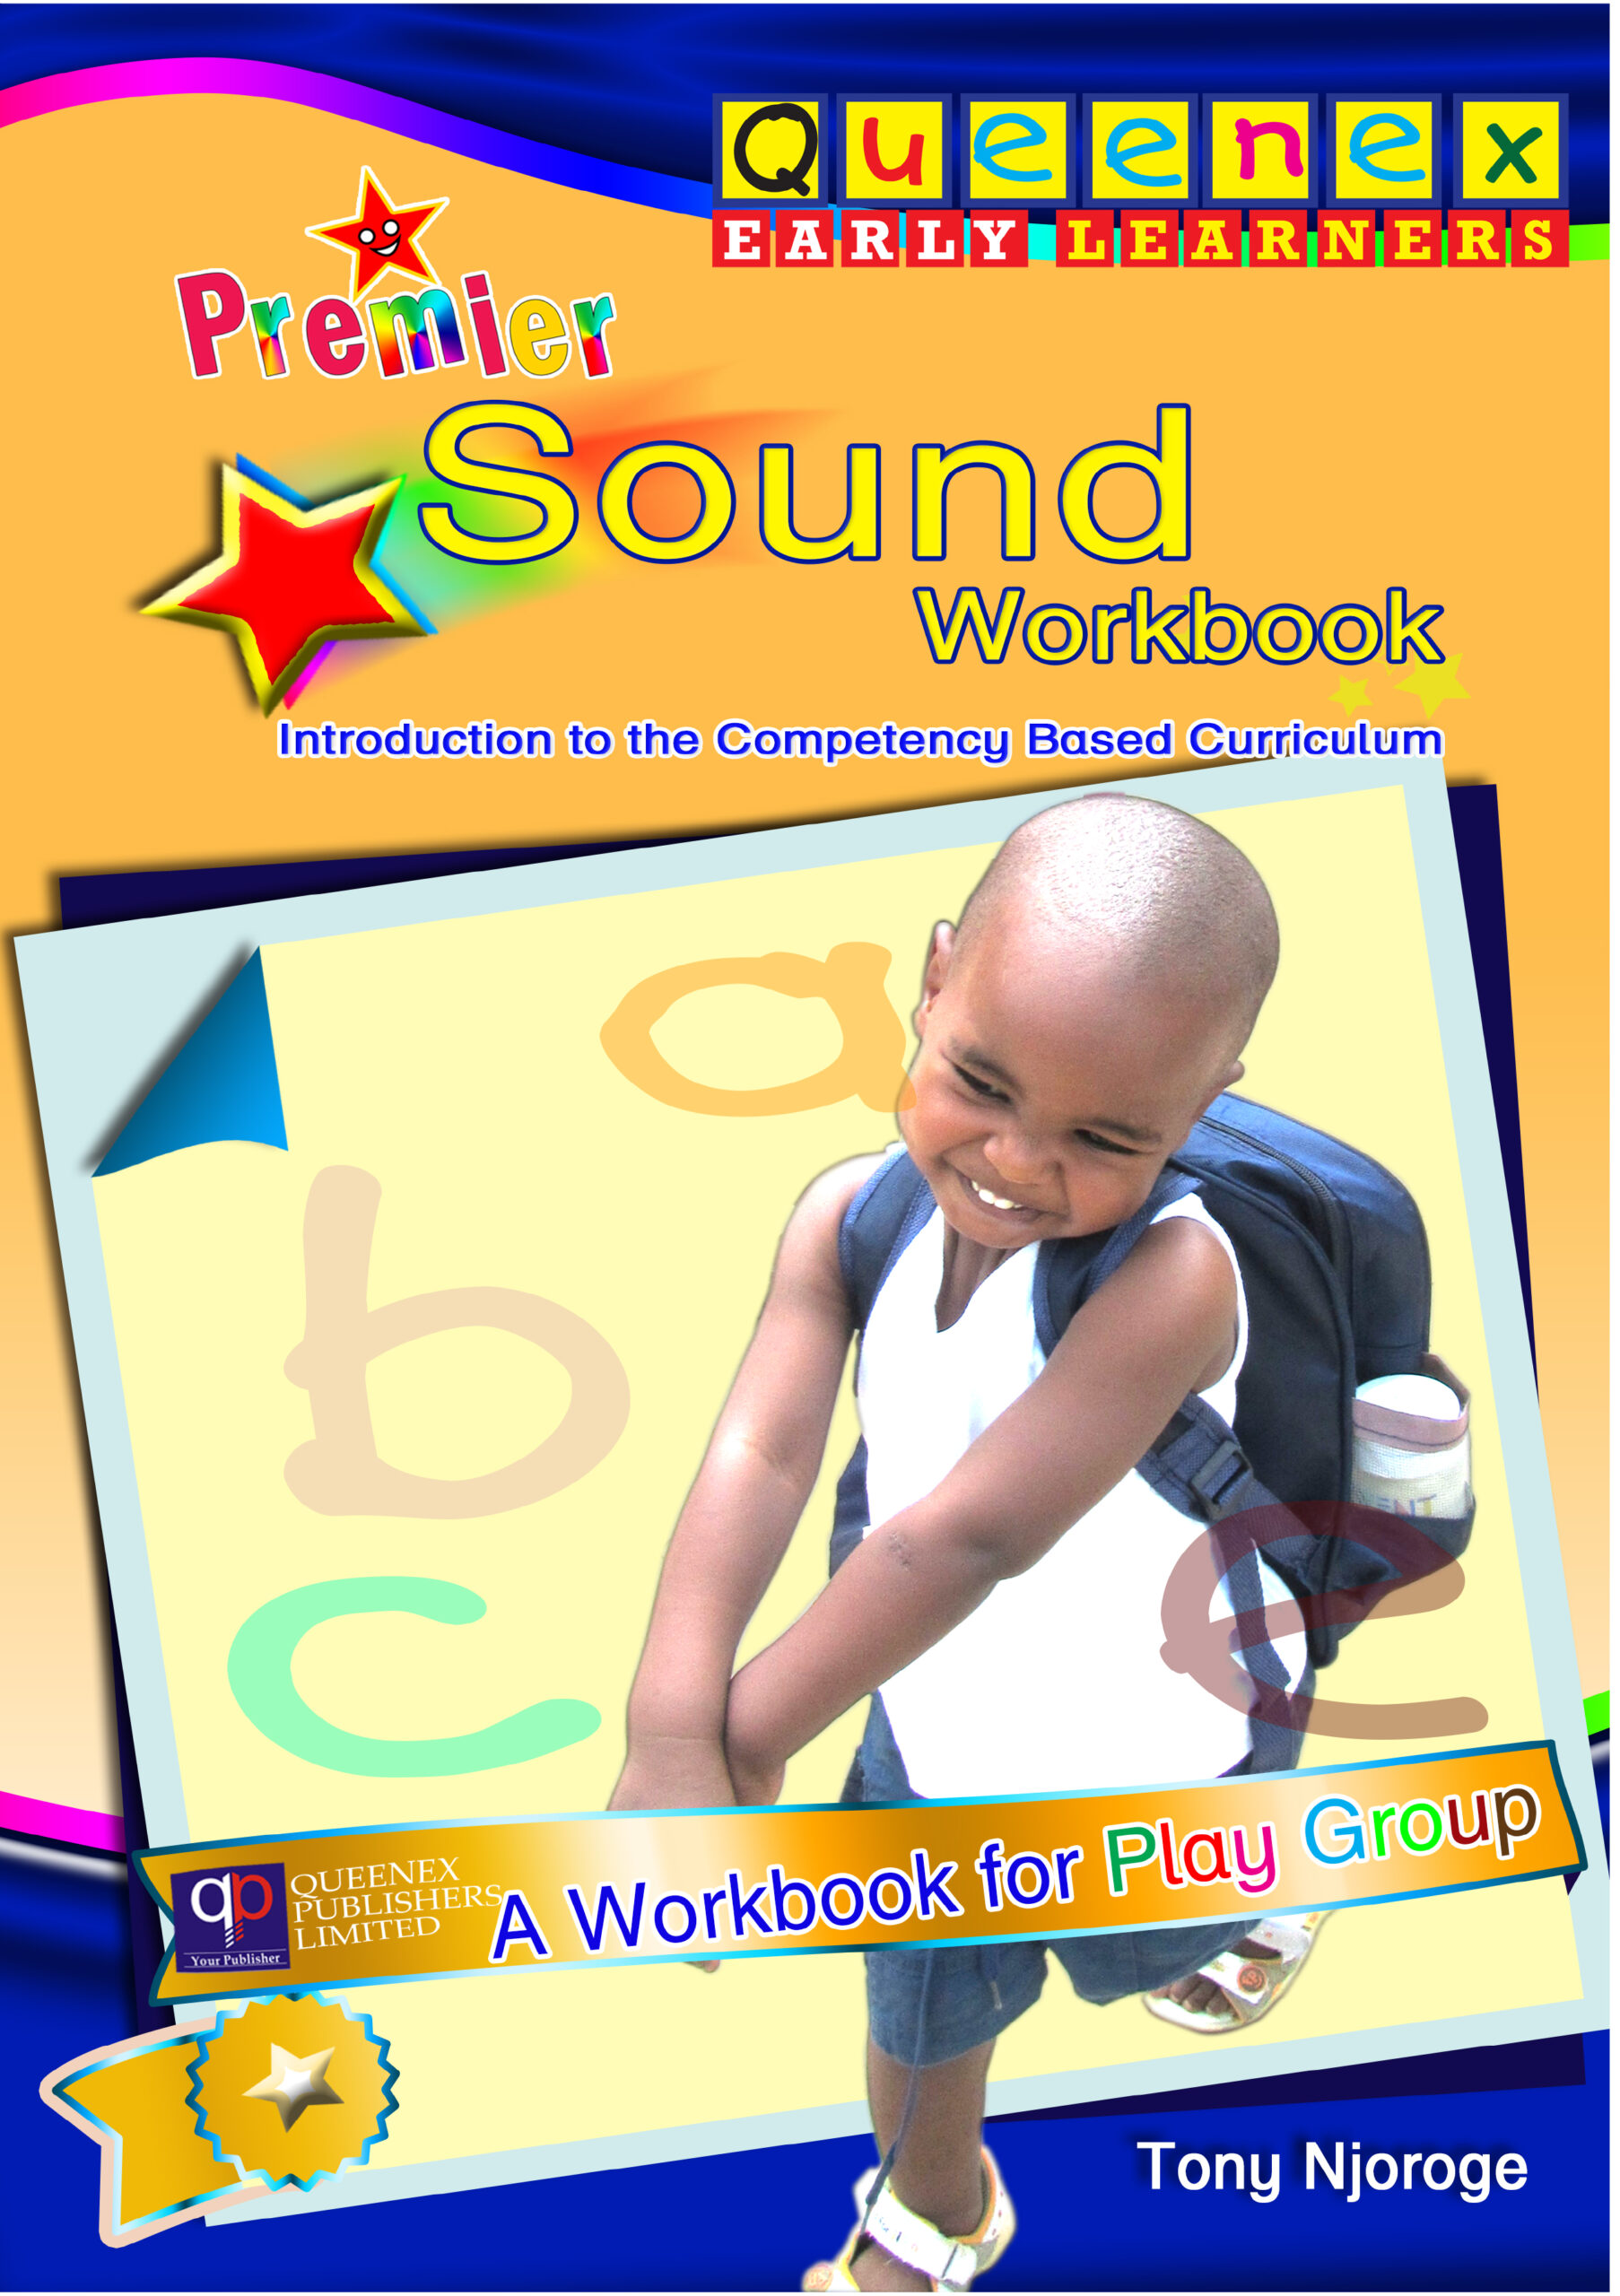 Queenex Premier Sound Workbook Play Group